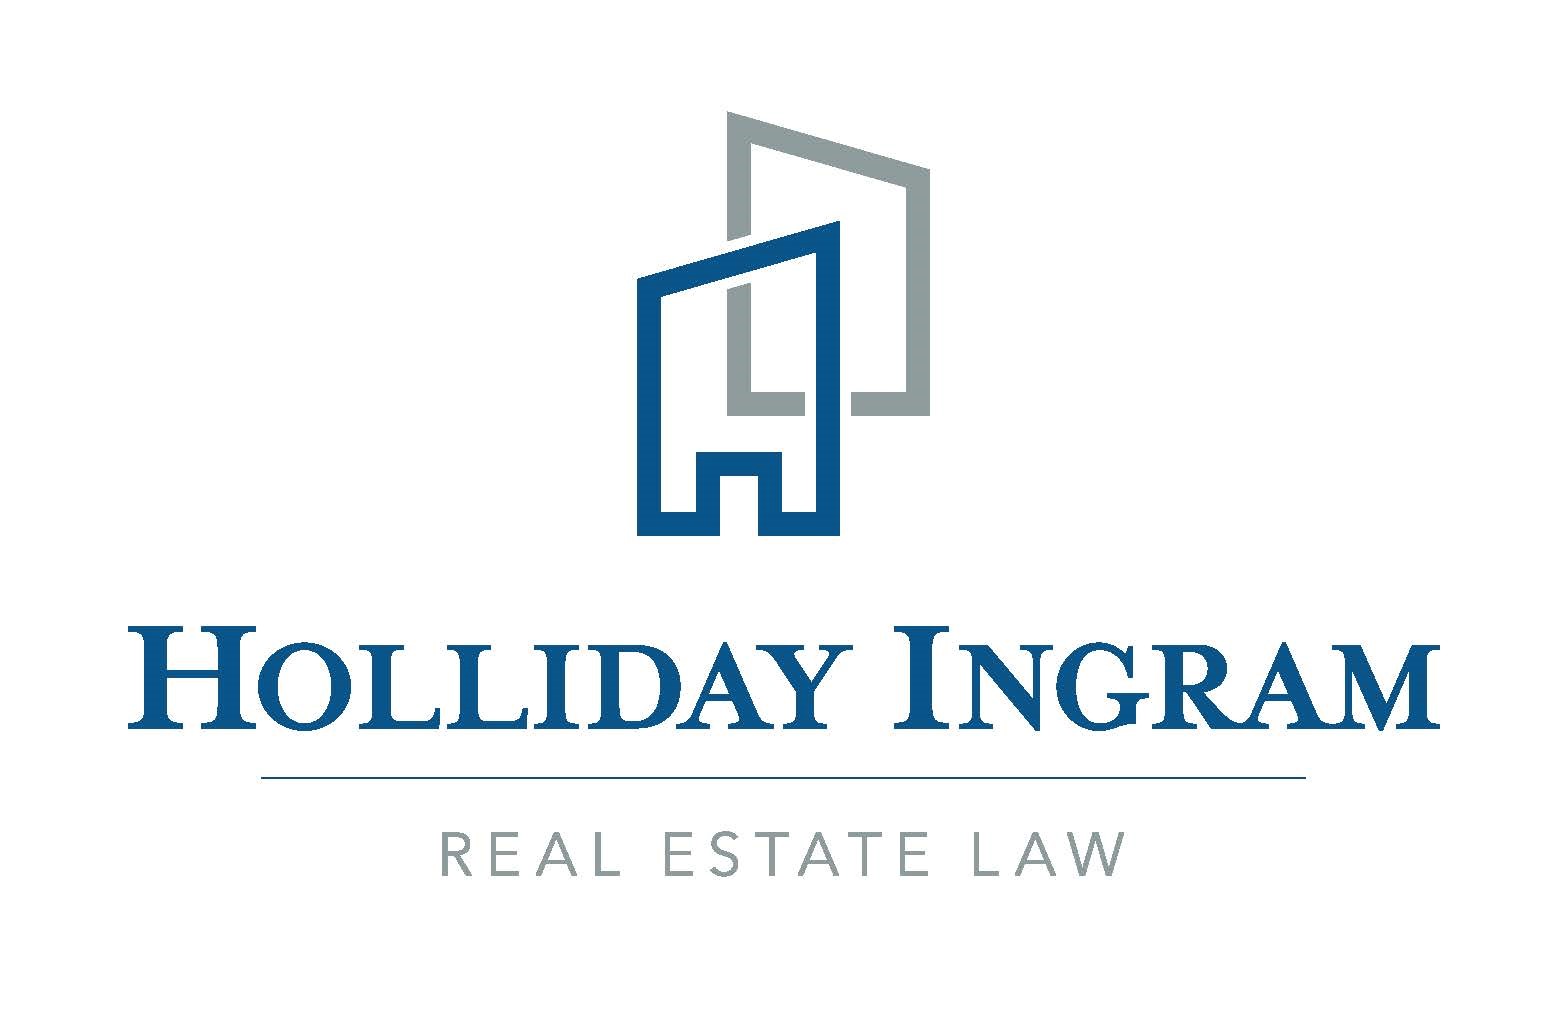 Holiday Ingram - Real Estate Law